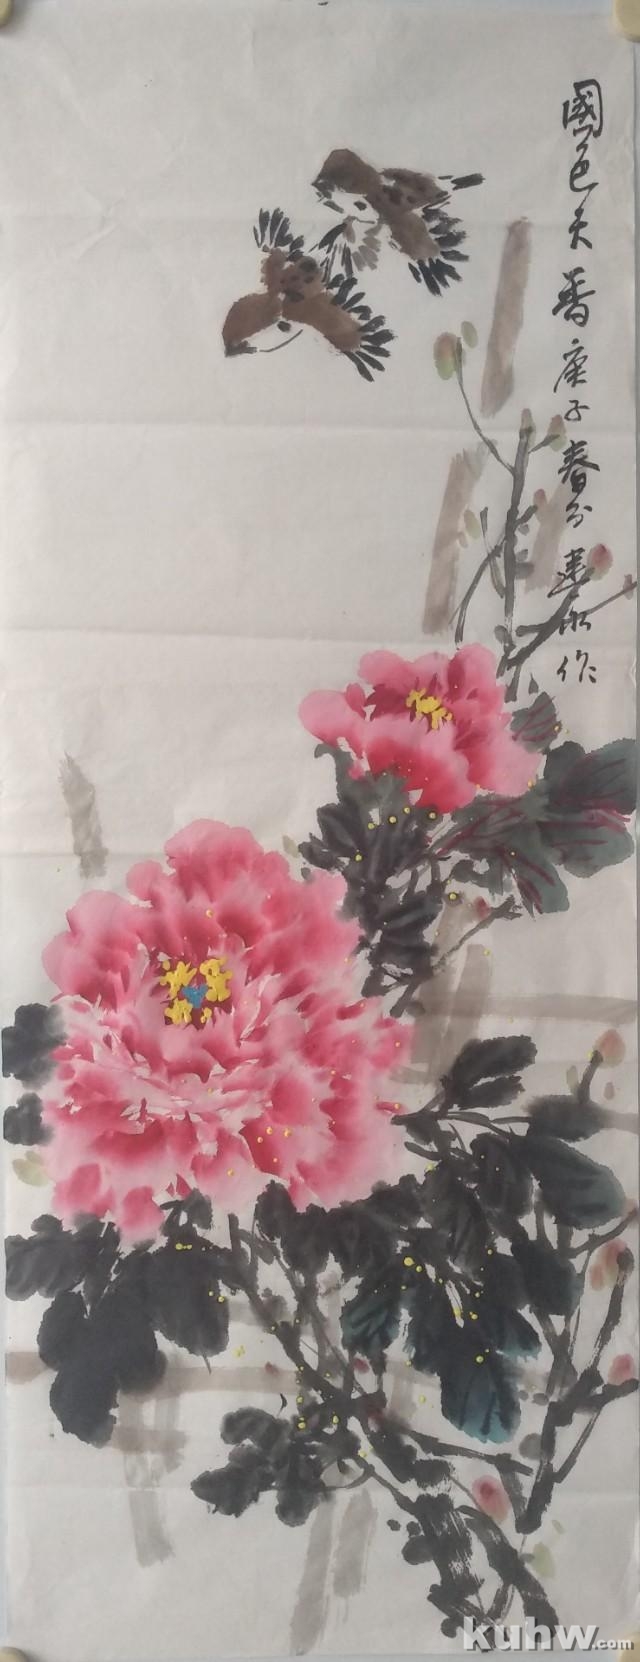 《国色天香》——牡丹花和麻雀的画法